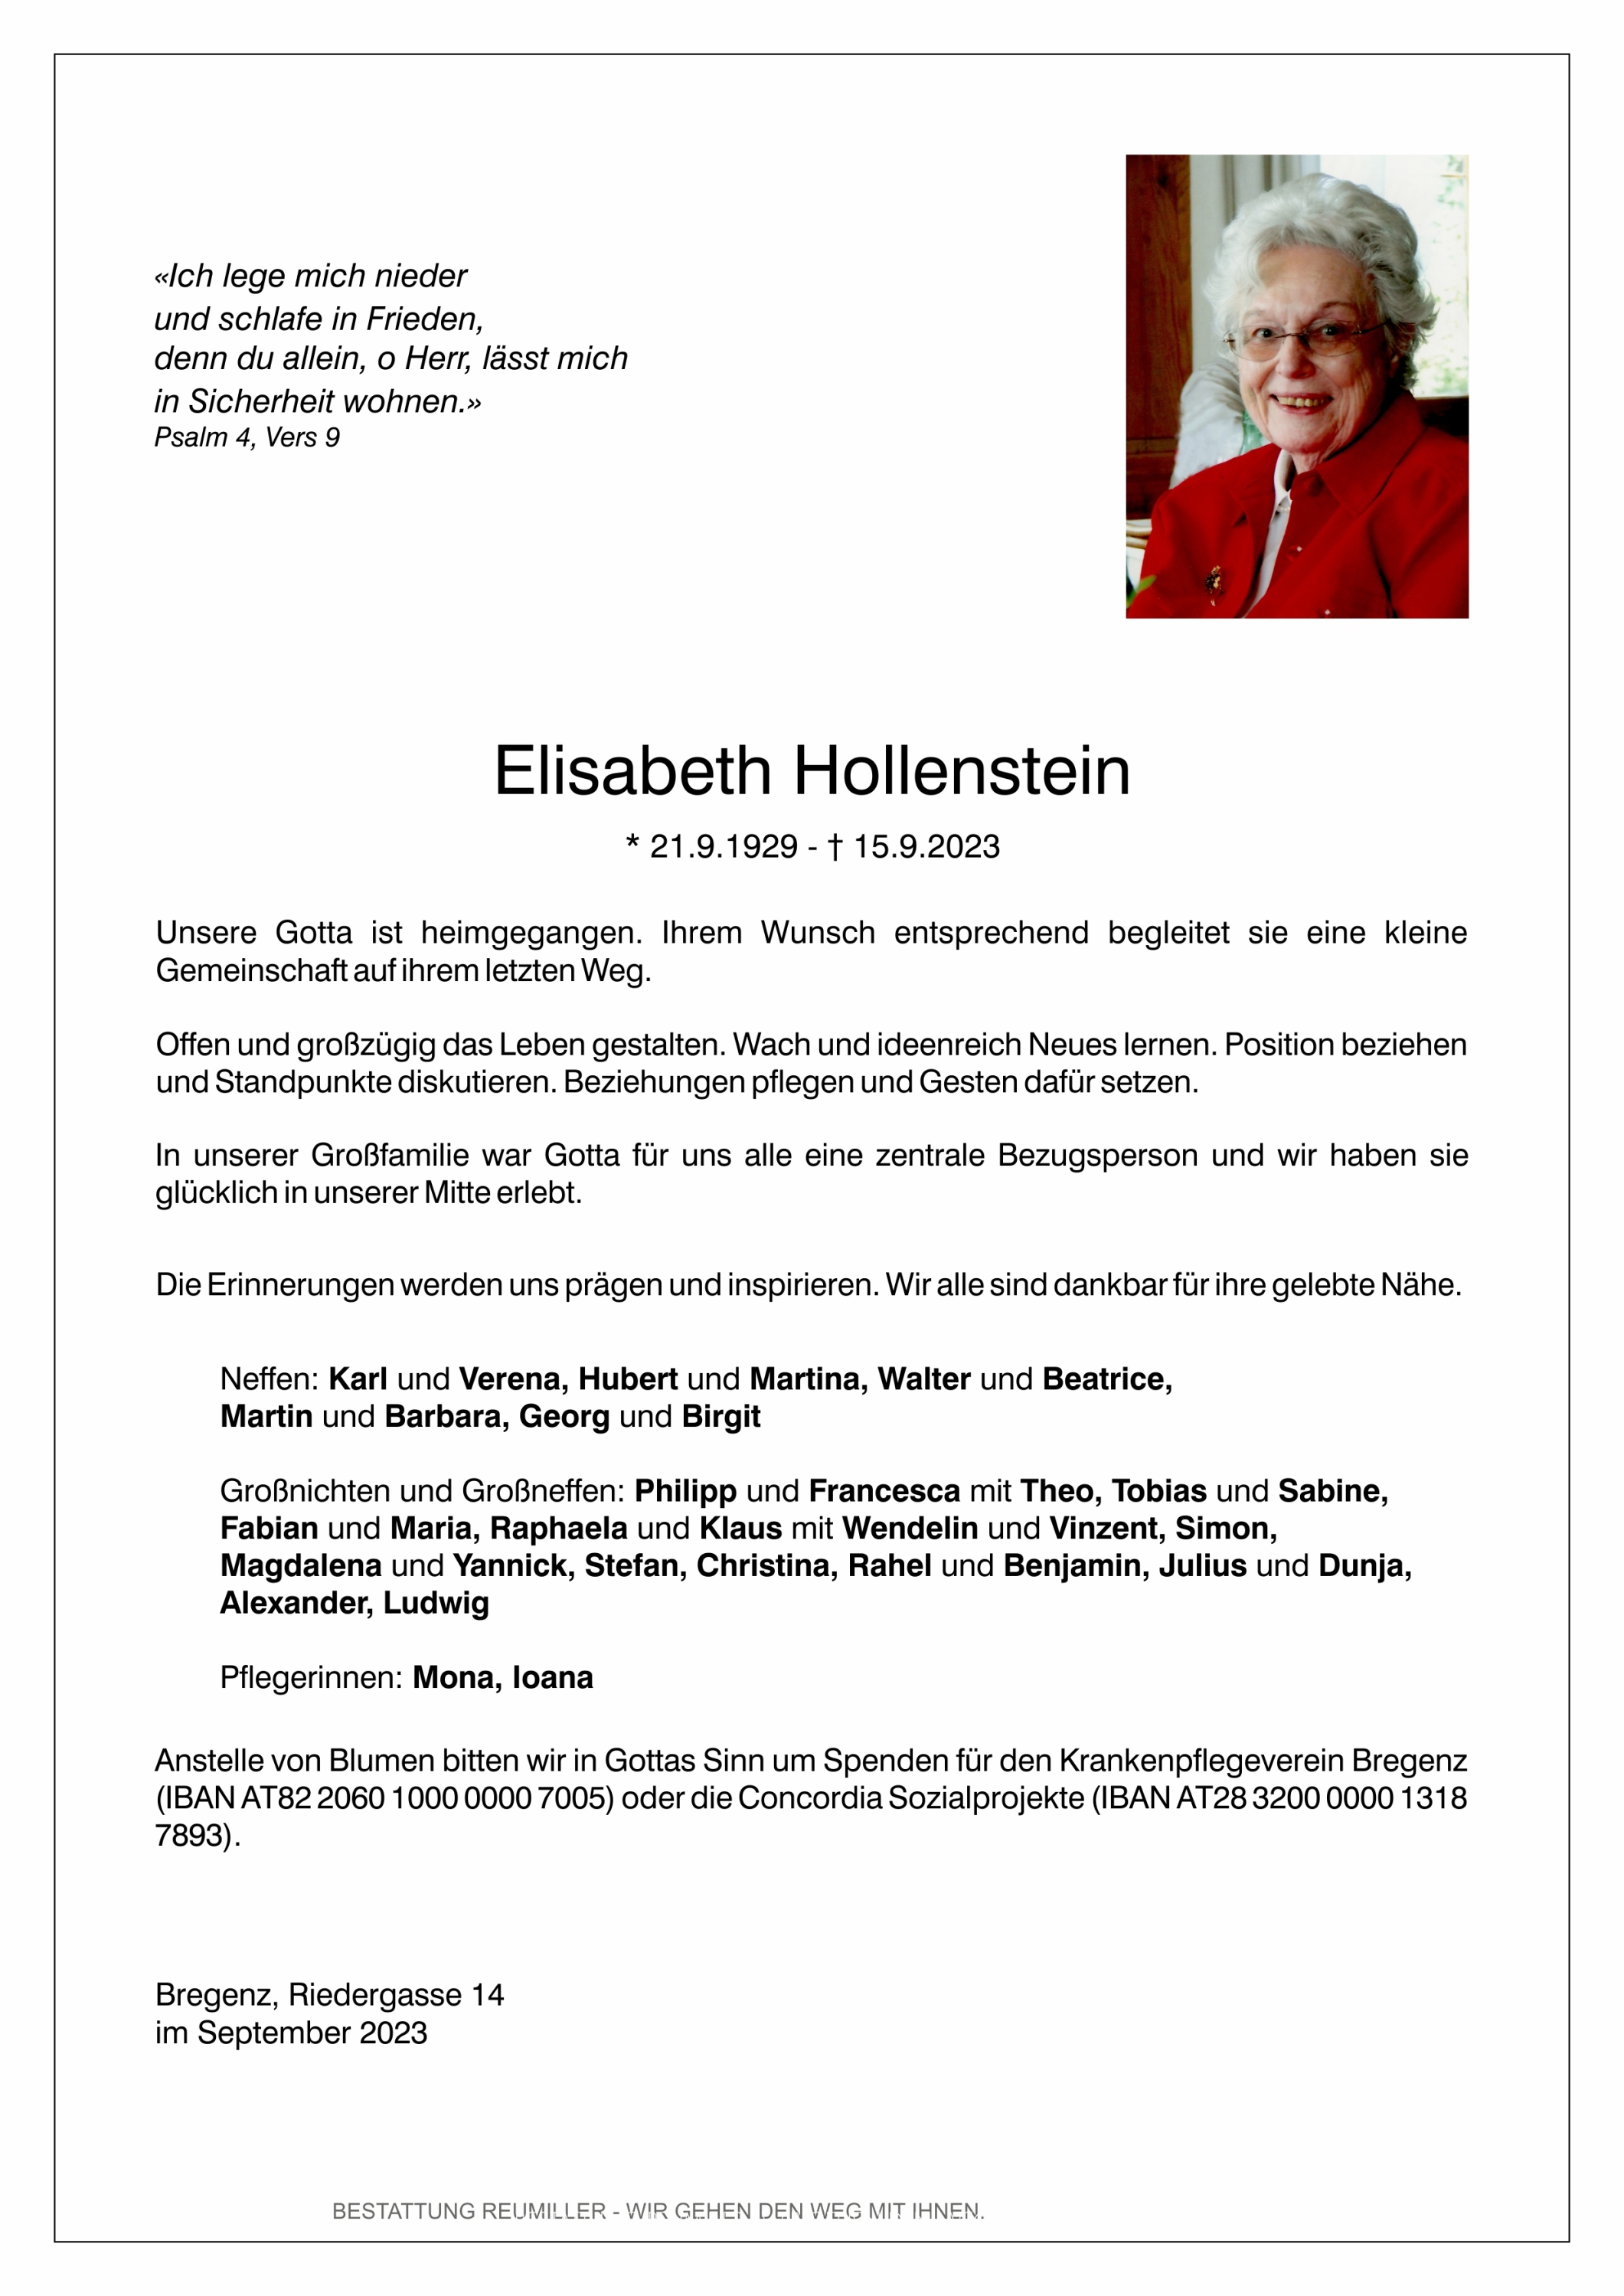 Elisabeth Hollenstein